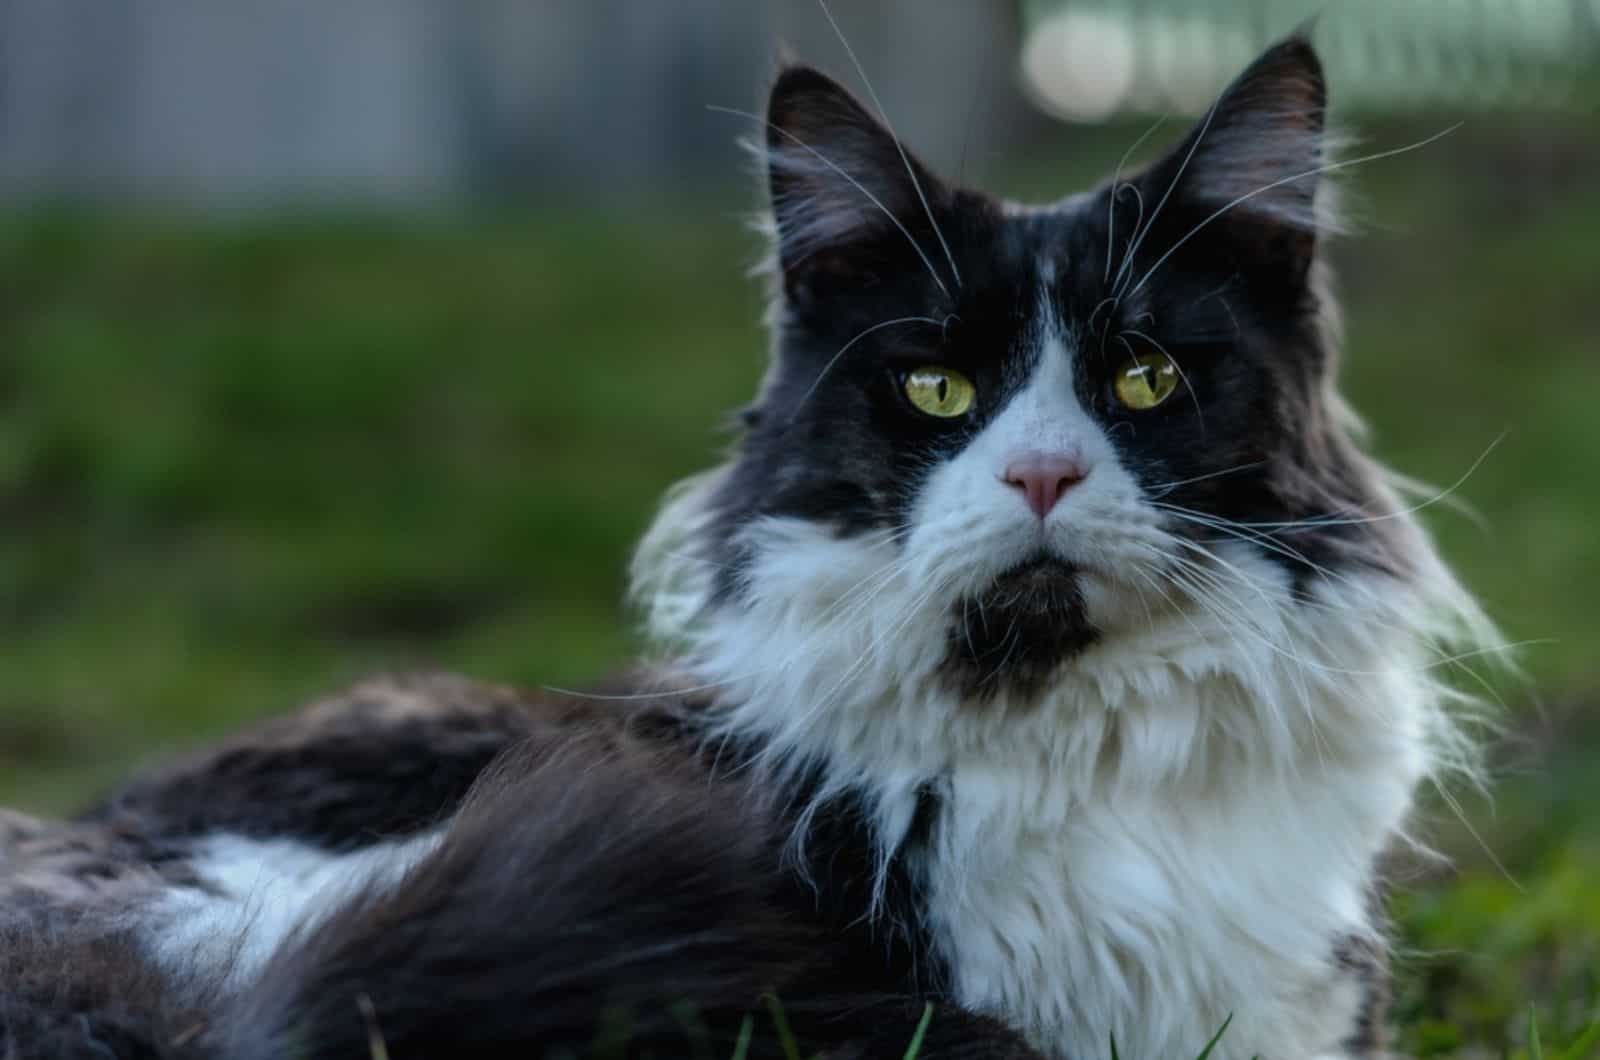 zwart-witte Main Coon kat ligt in het gras in de tuin